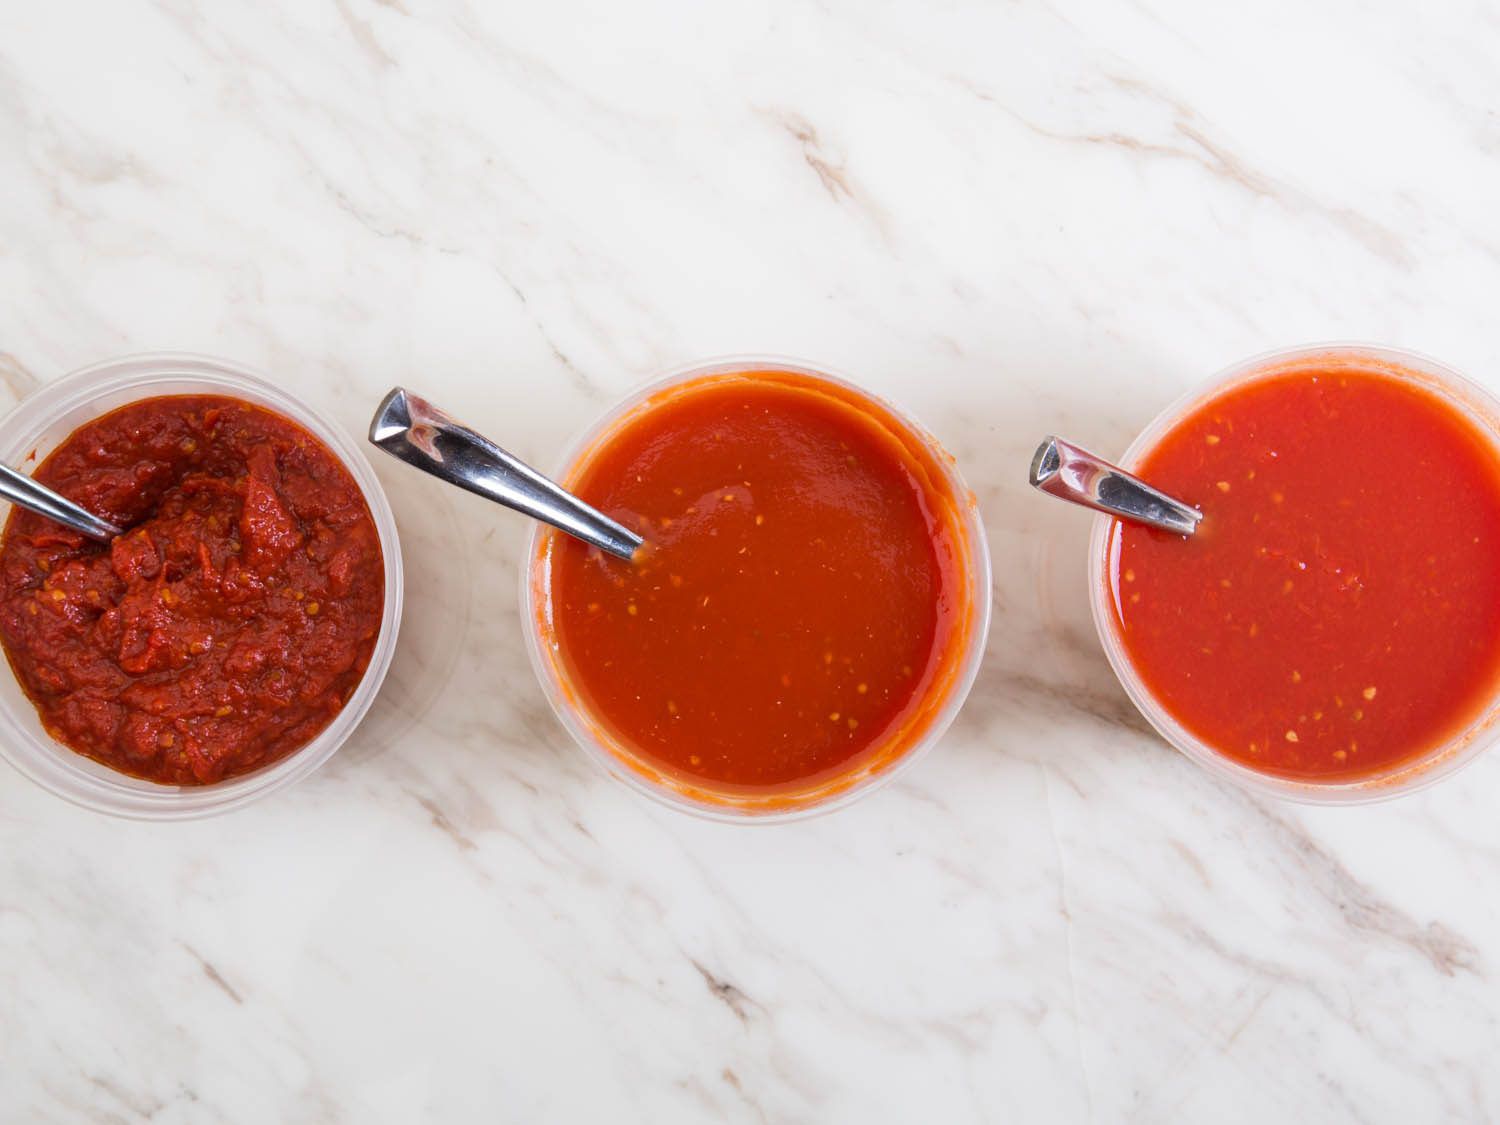 从左至右:新鲜番茄酱容器、番茄酱容器、新鲜番茄酱容器